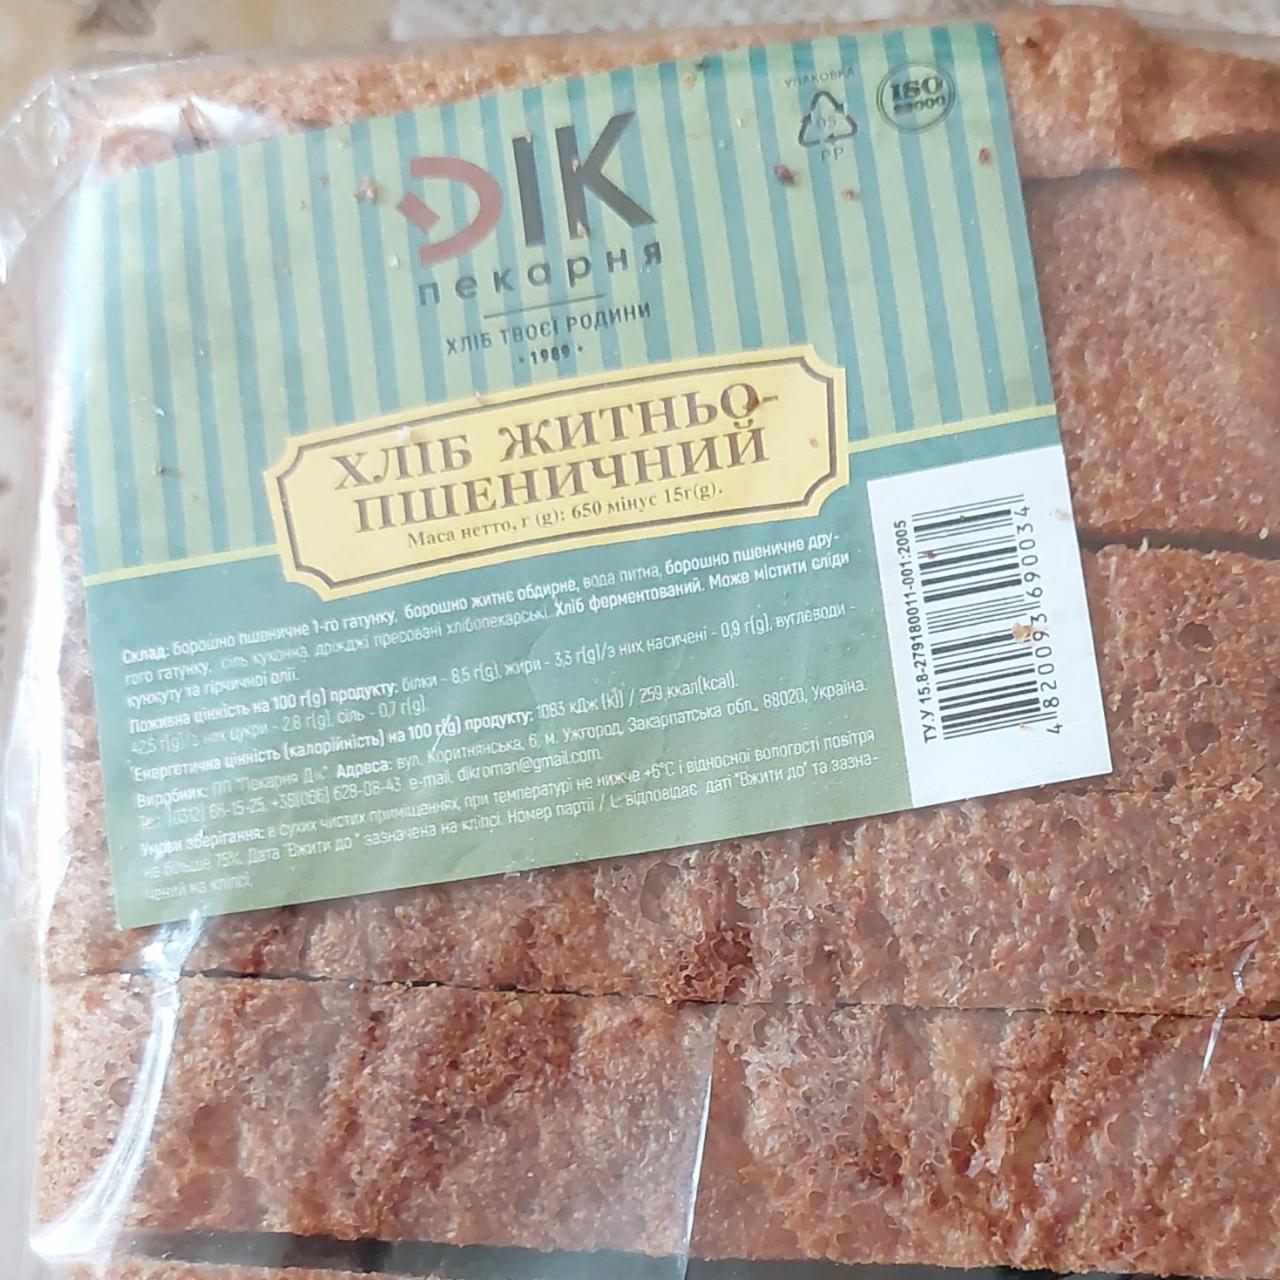 Фото - Хлеб ржано-пшеничный DIK Пекарня